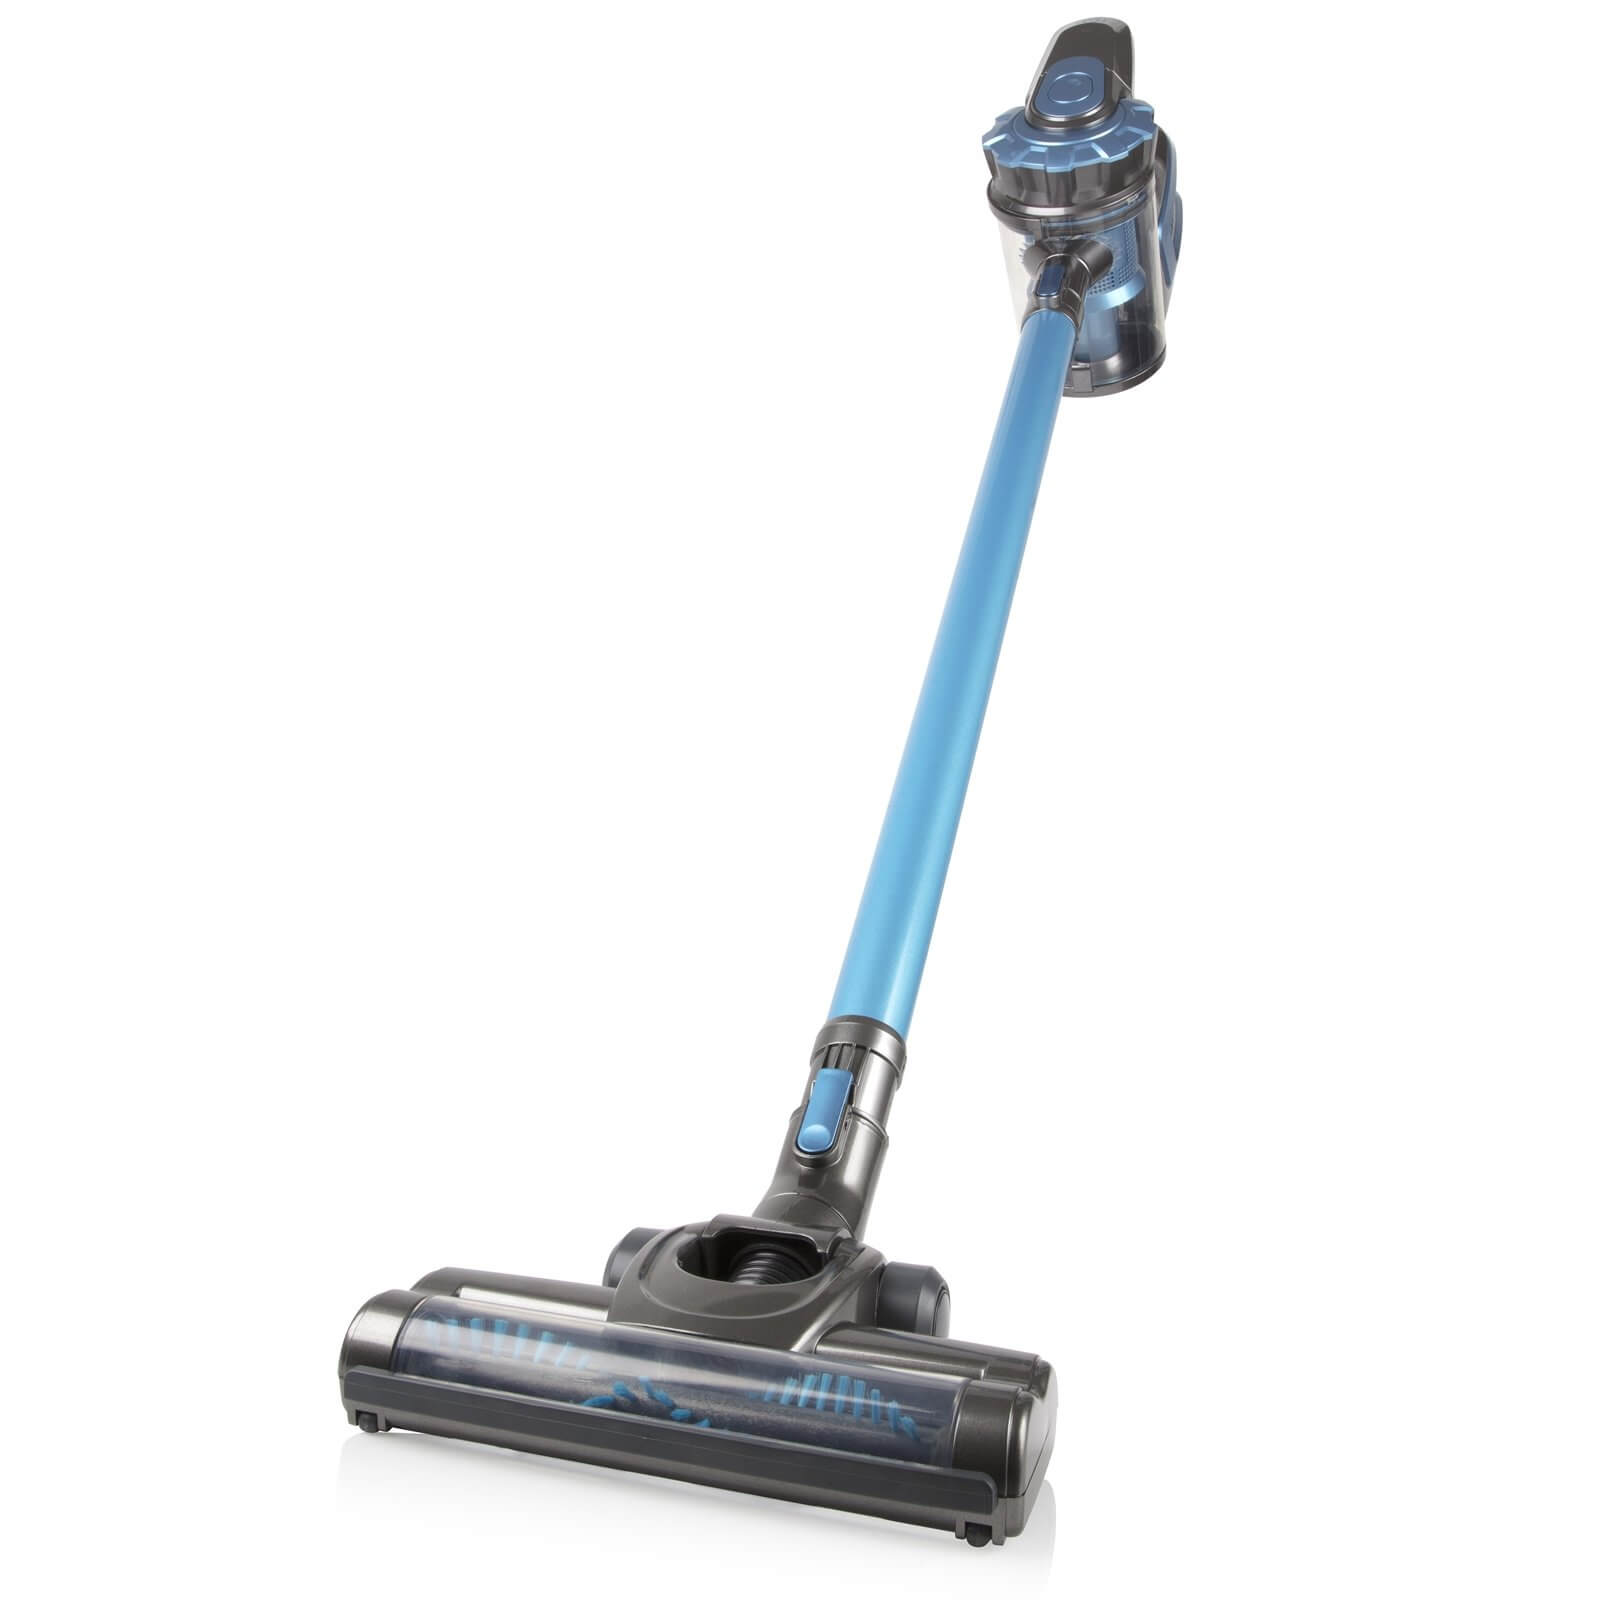 Cordless Handheld Vacuum with Turbo Brush